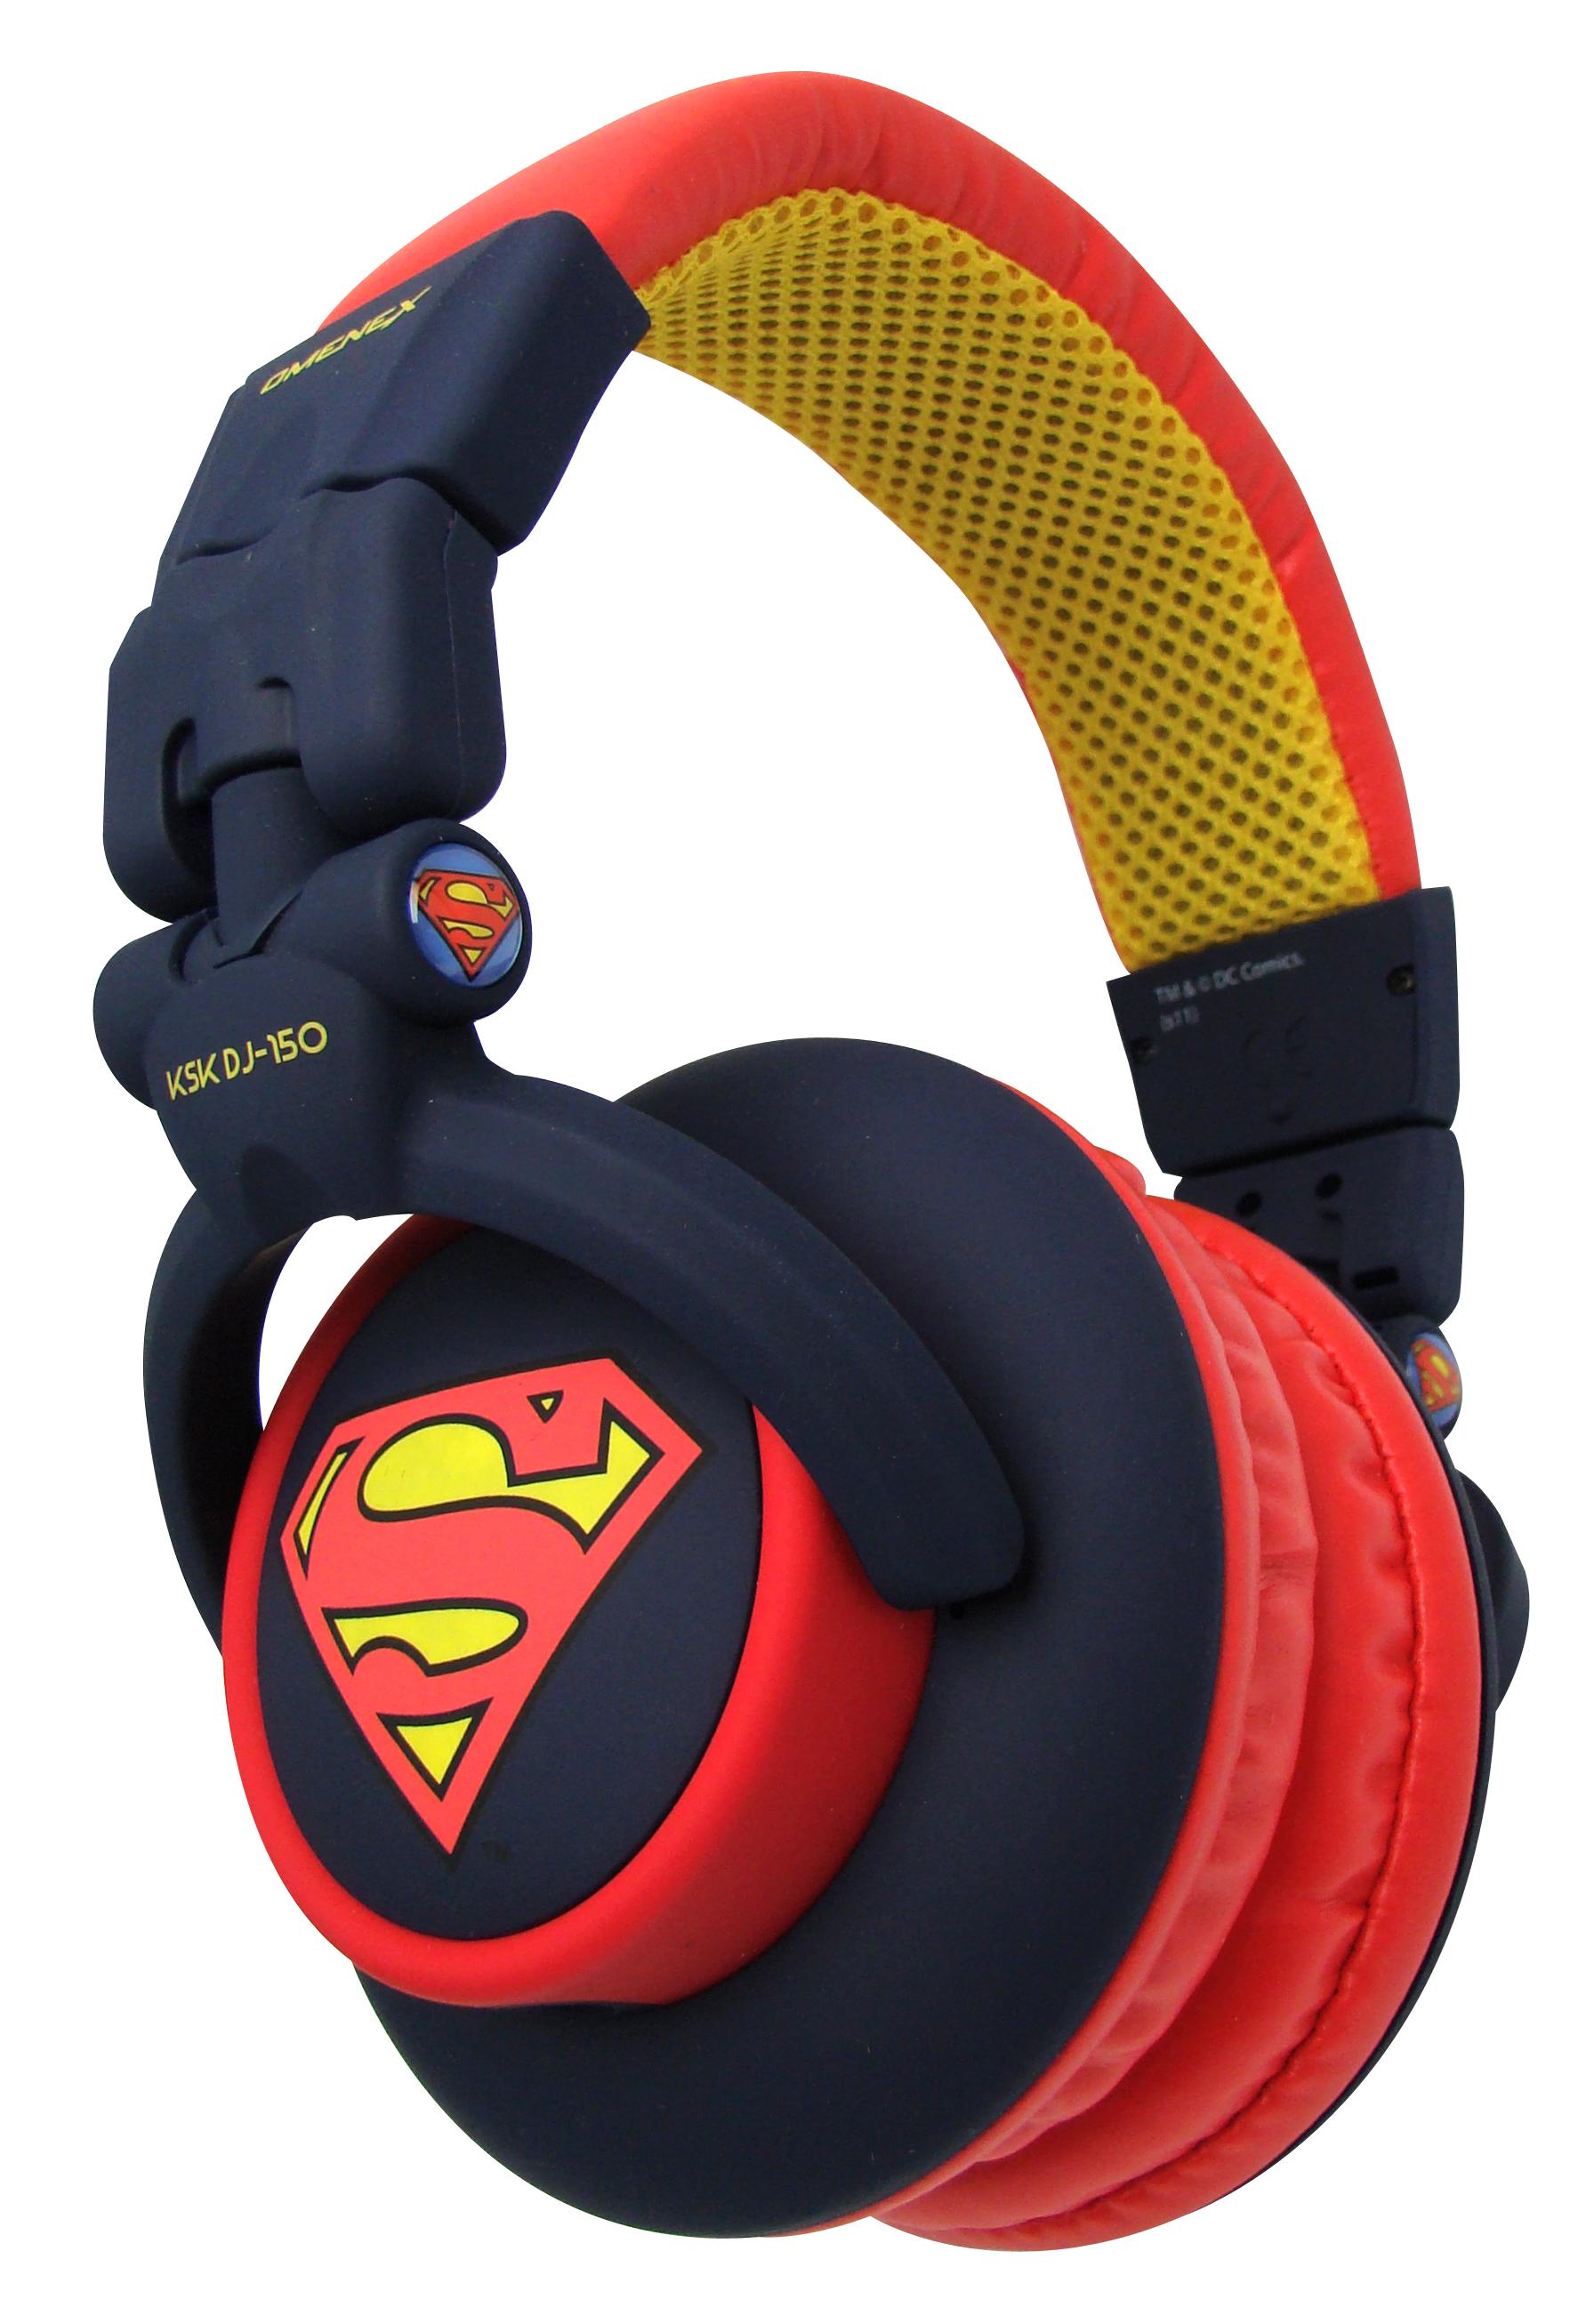 493650 KSK DJ150 Superman Omenex présente trois casques DC Comics